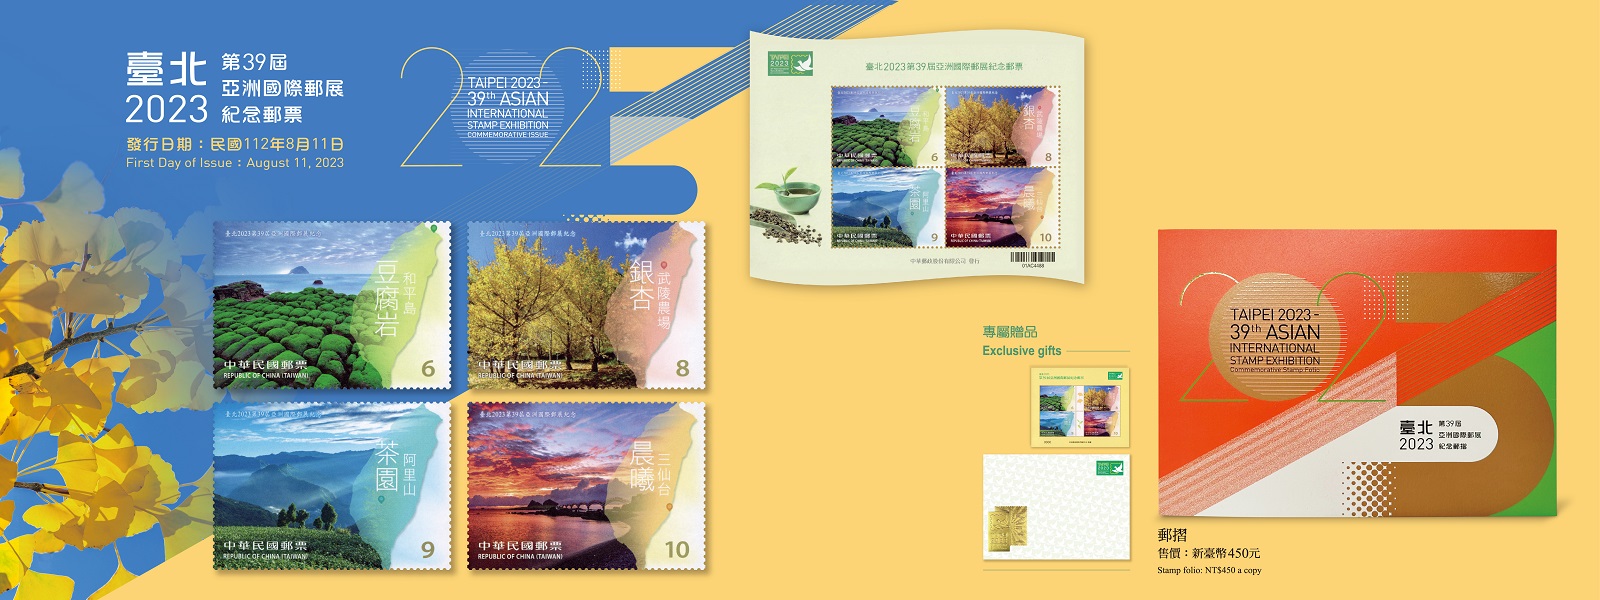 廣告連結:紀348 臺北2023第39屆亞洲國際郵展紀念郵票